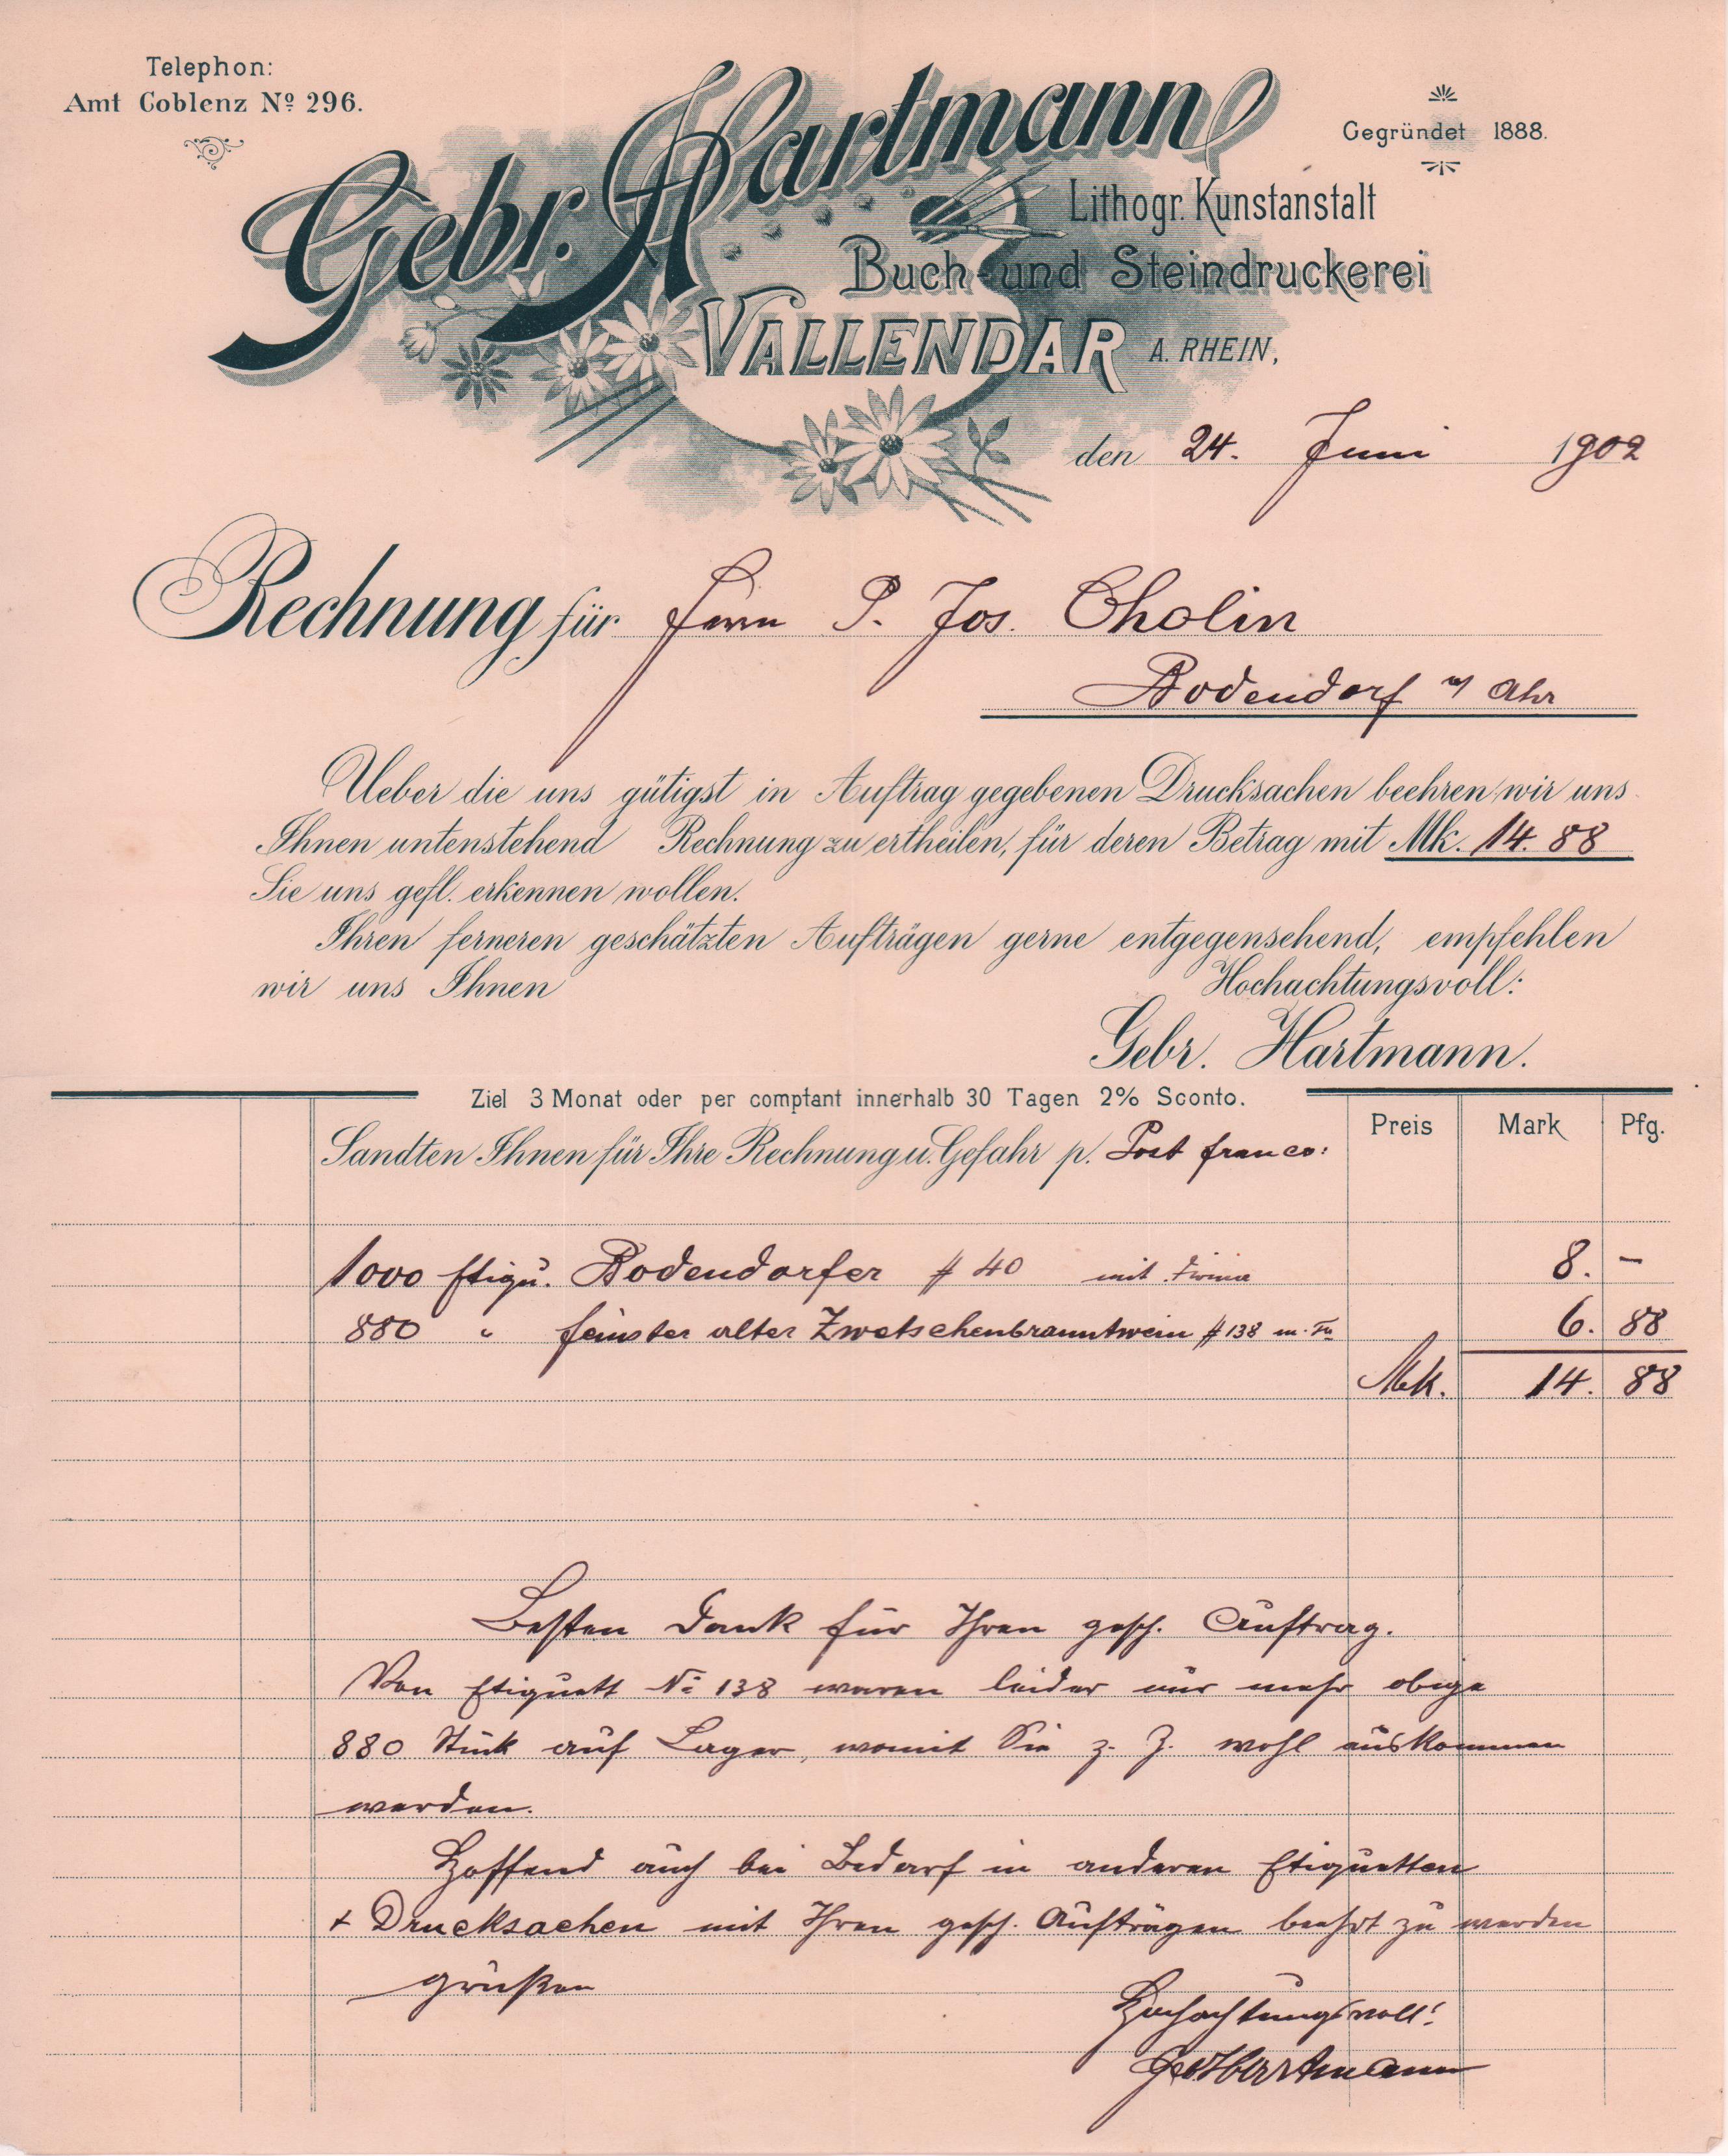 Rechnung der Gebr. Hartmann in Vallendar für Etikettendruck vom 24. Juni 1902 an Peter Josef Cholin in Bodendorf/Ahr (Heimatarchiv Bad Bodendorf CC BY-NC-SA)